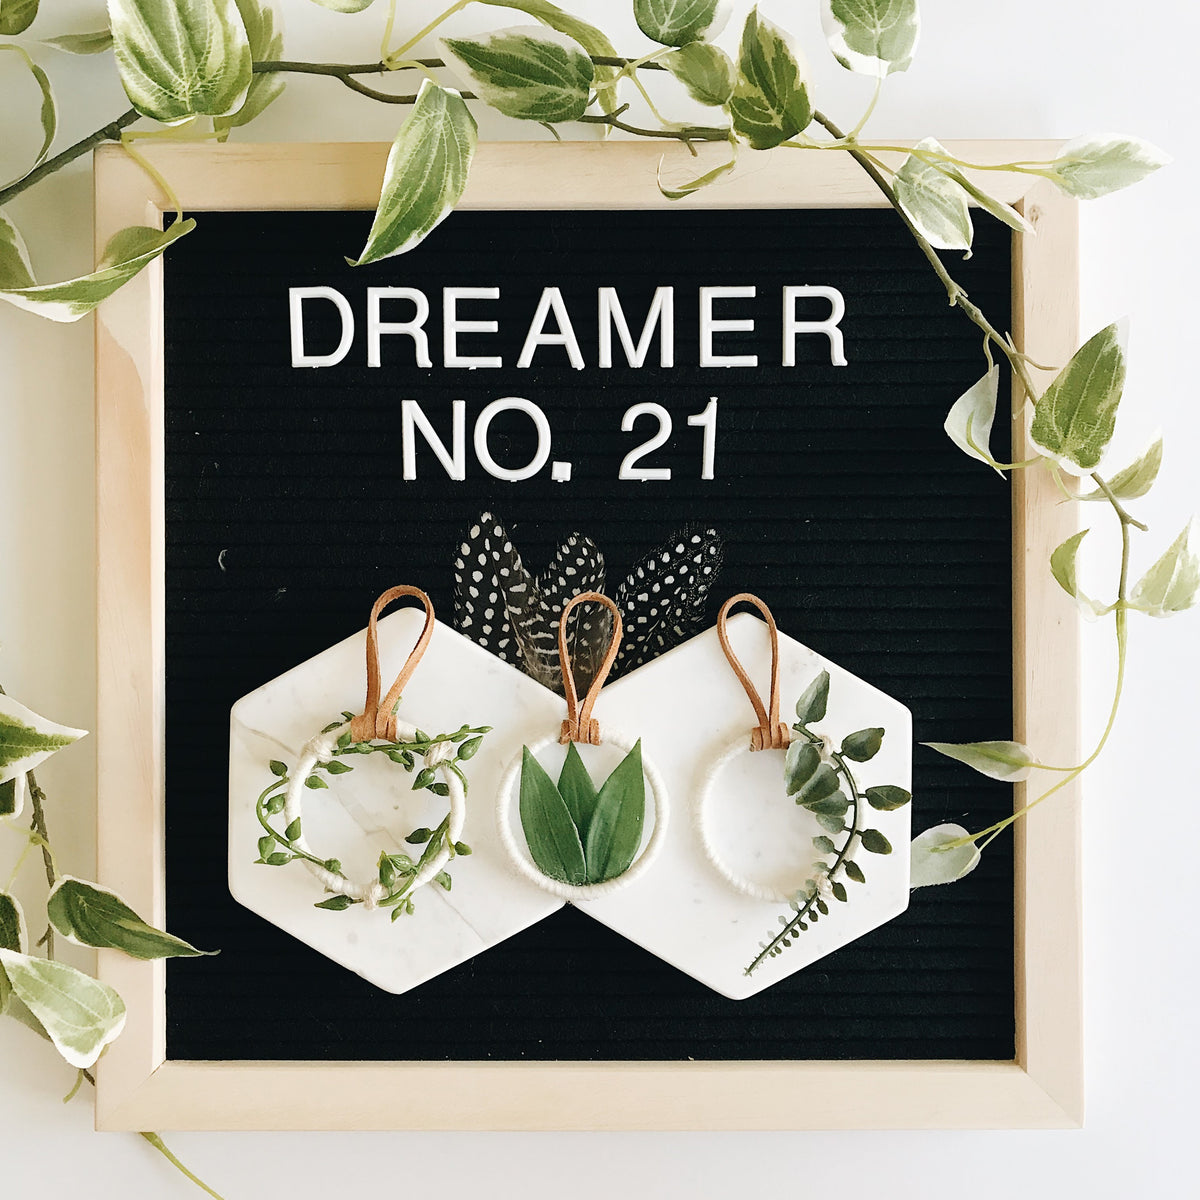 Dreamer No. 21 | 100 Days of Dreamers